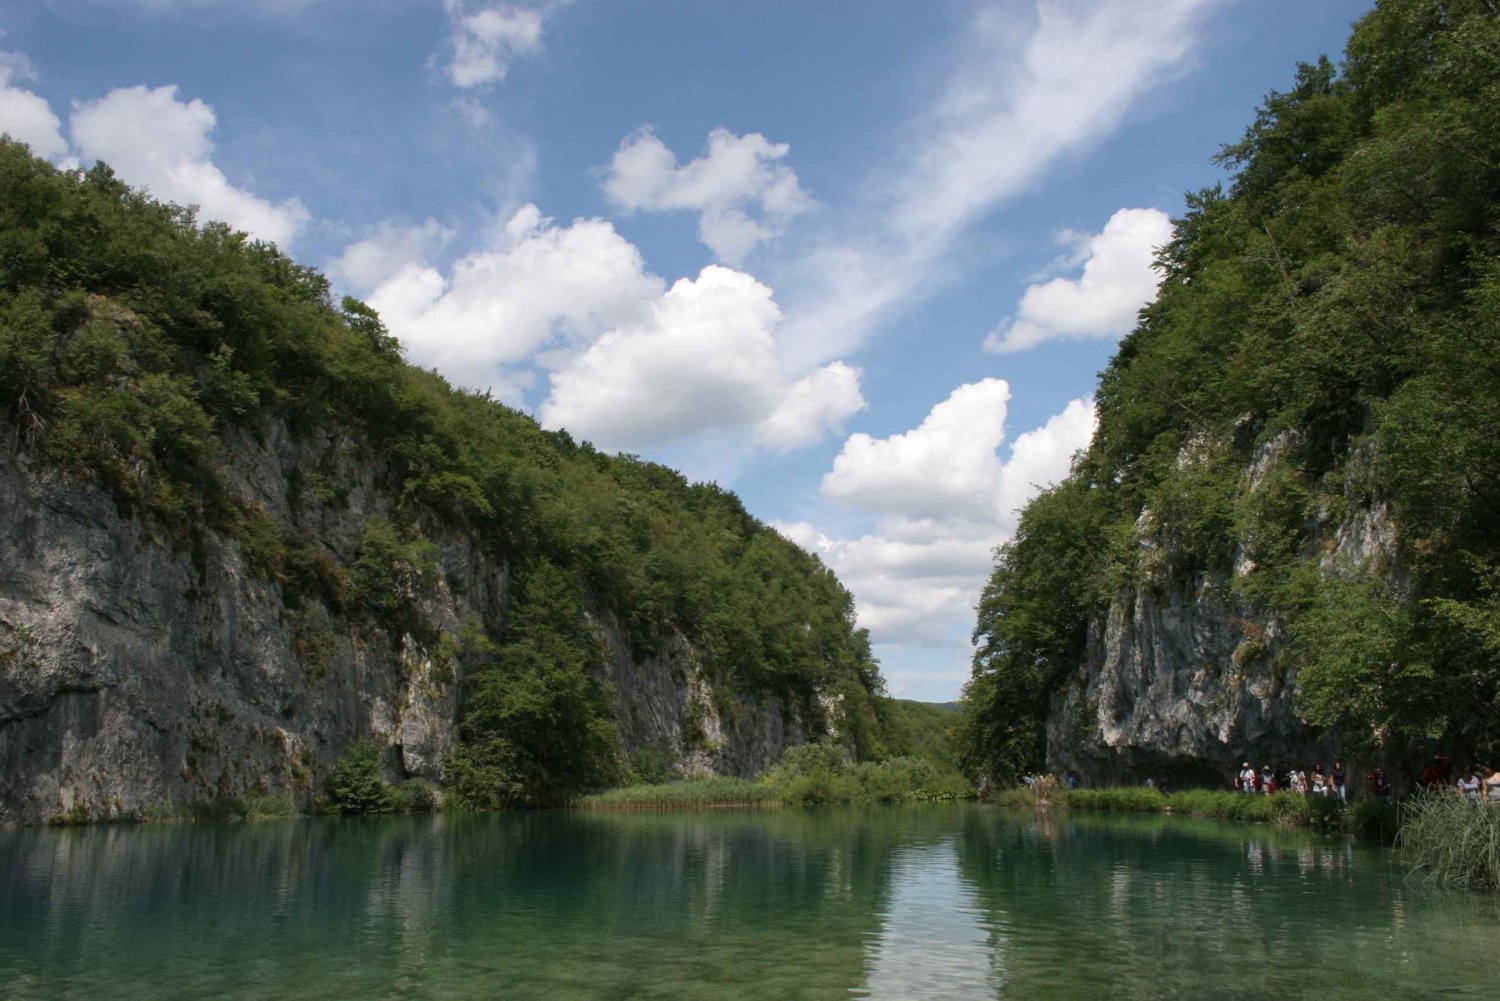 Plitvice Lakes National Park: Full-Day Tour from Split